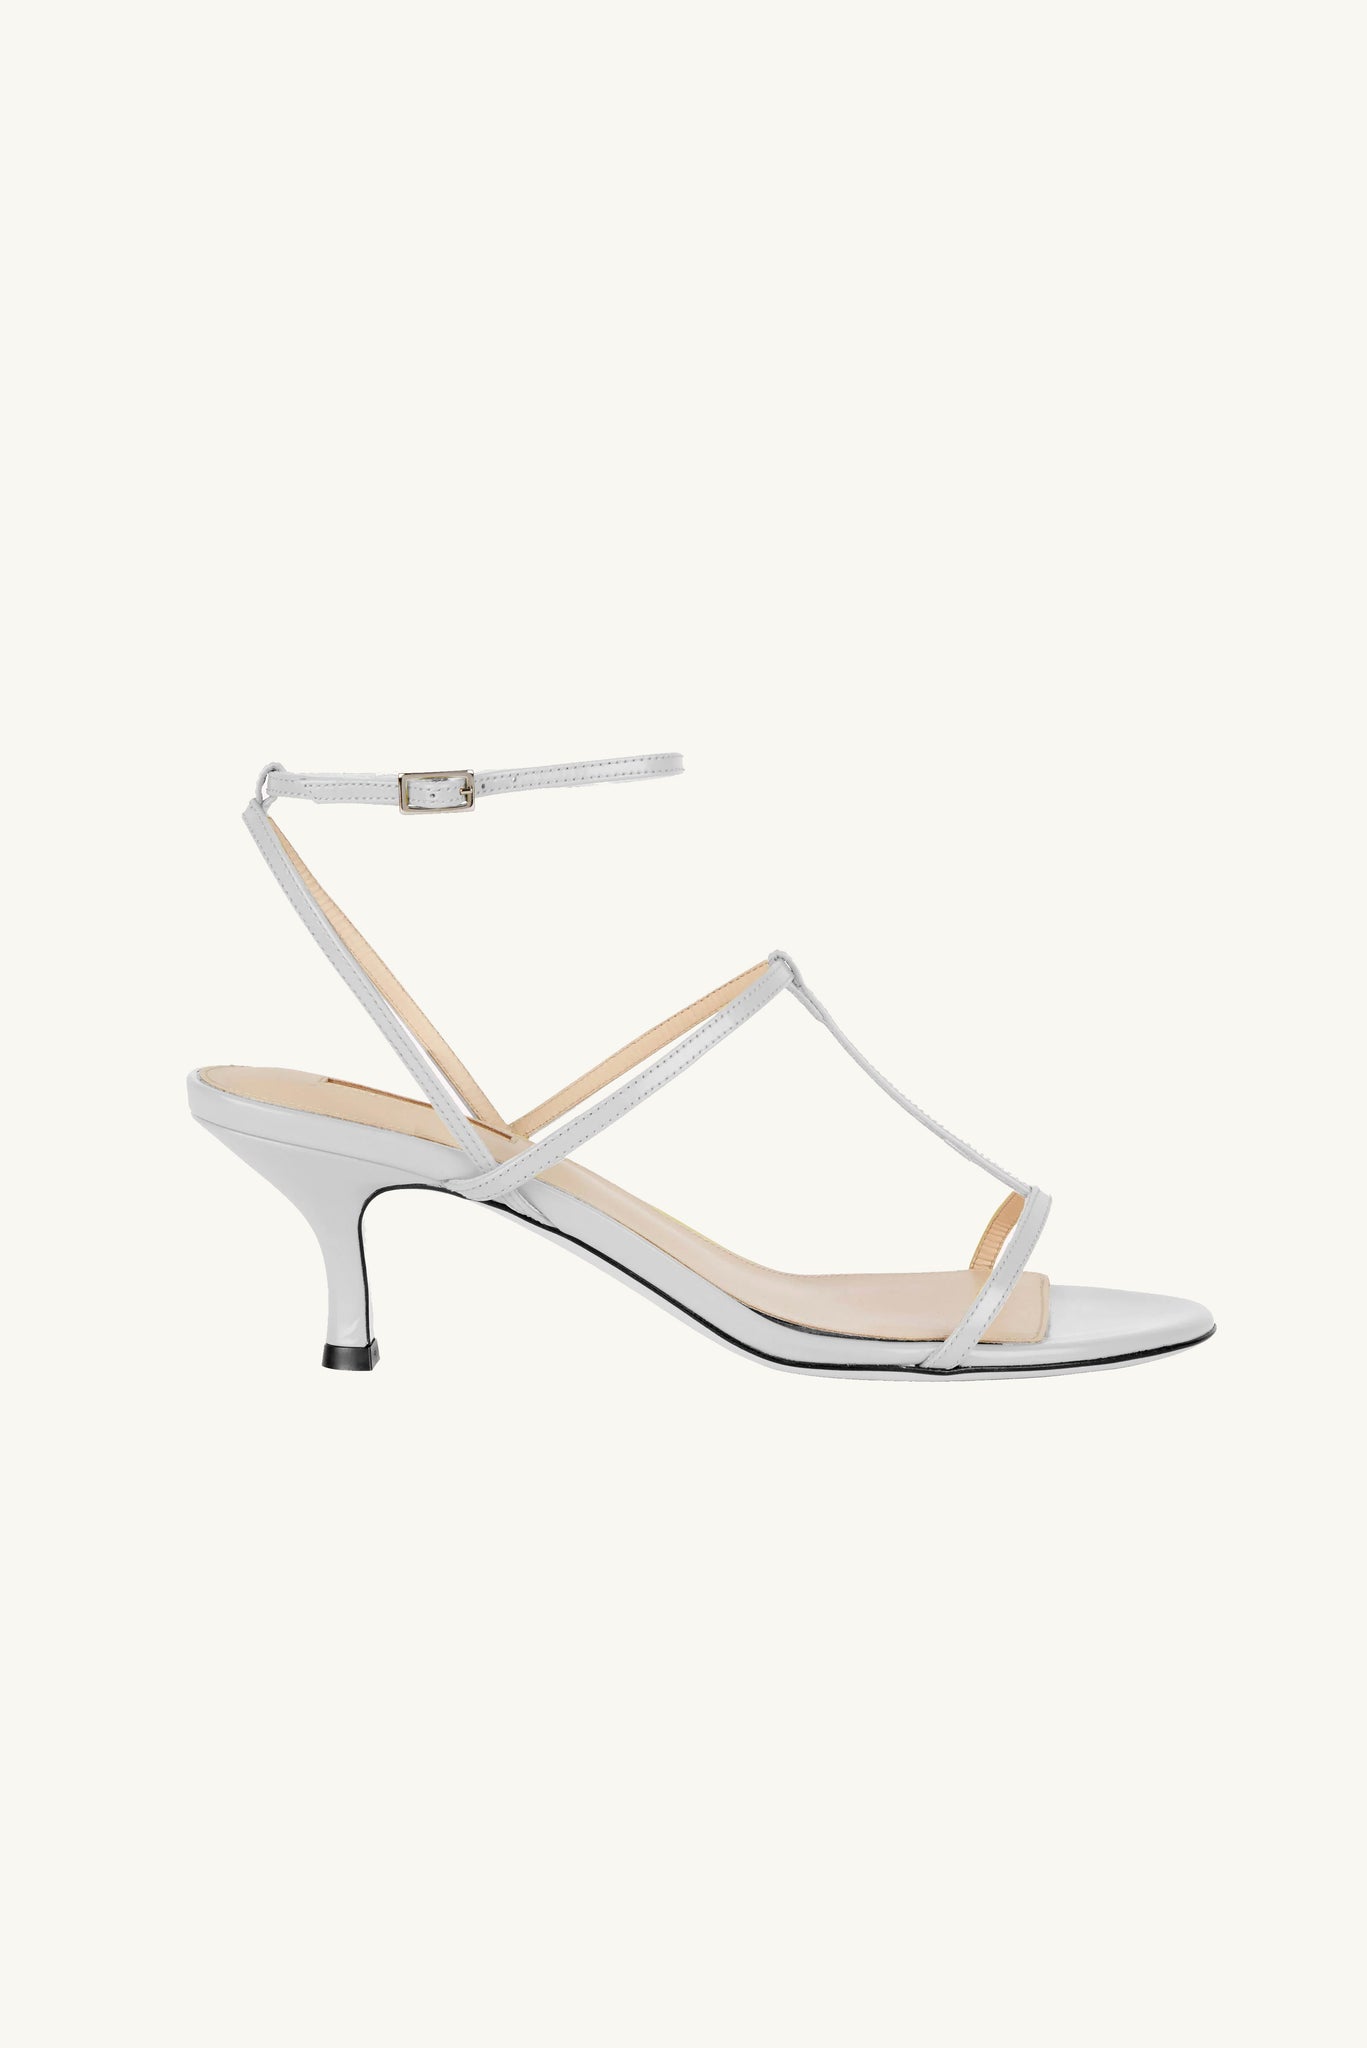 Novie Kitten Heel Shoes In White Leather | Emilia Wickstead